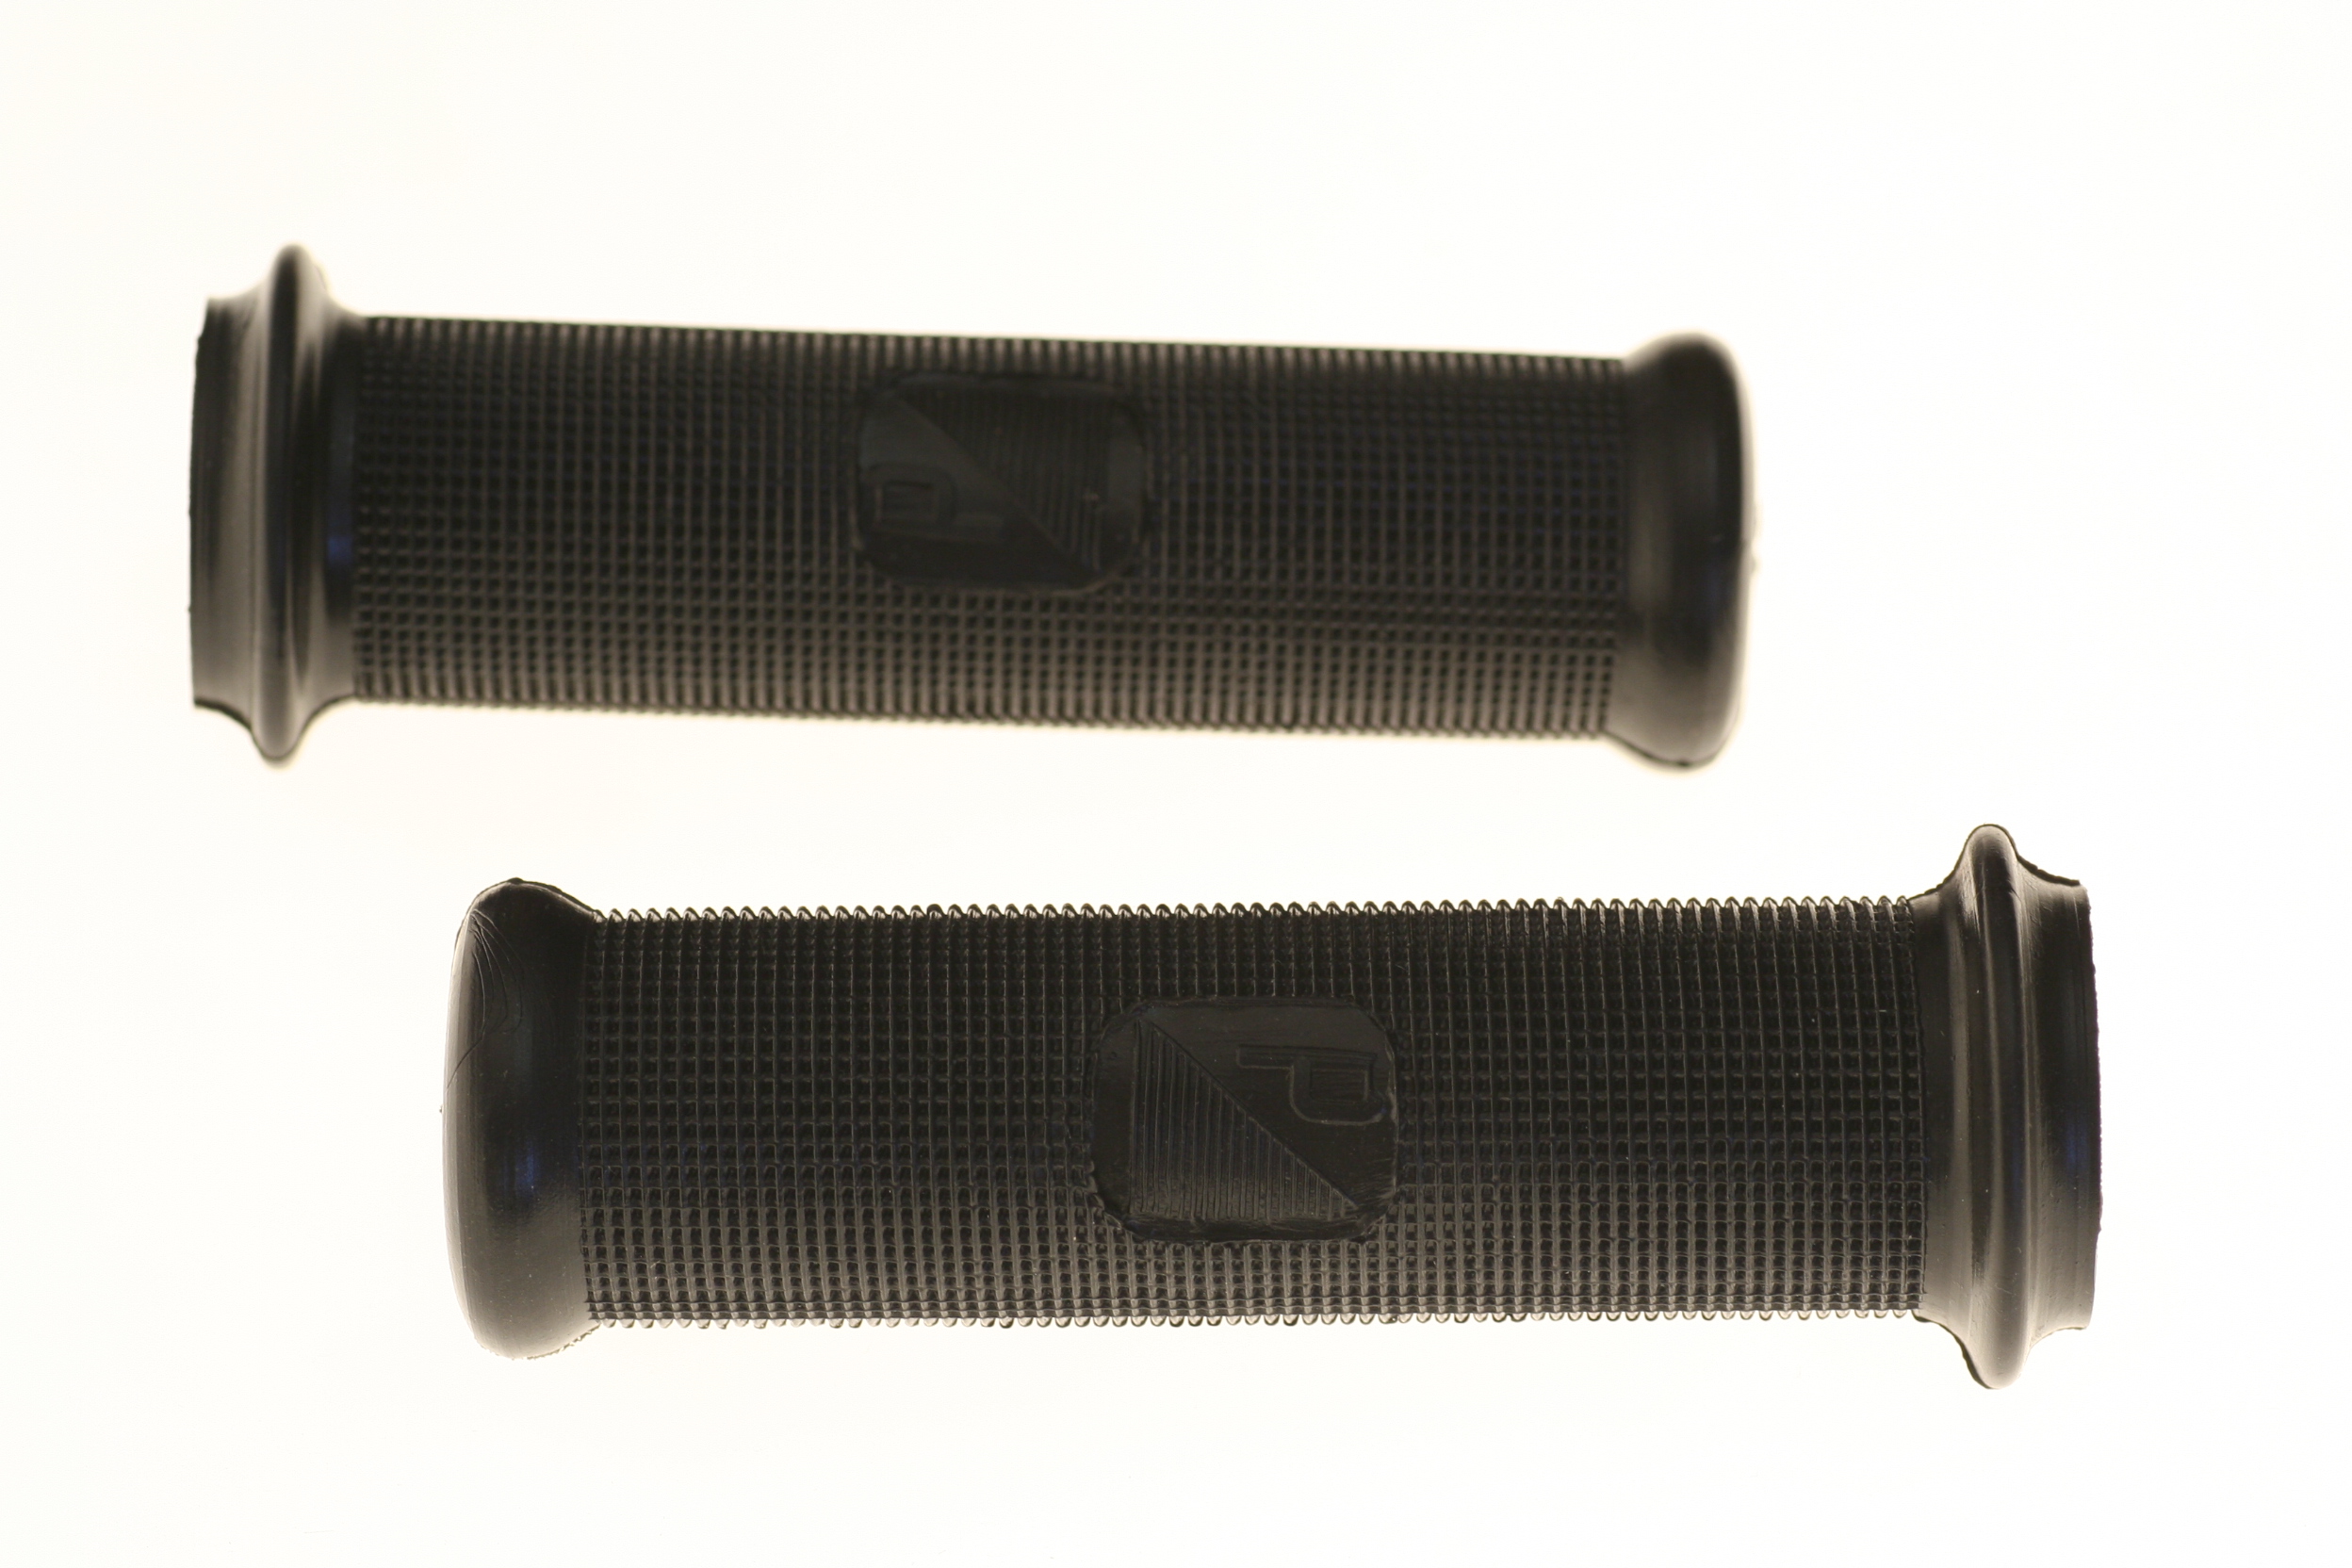 Griffe schwarz, Ø 22mm, mit Piaggio-Emblem